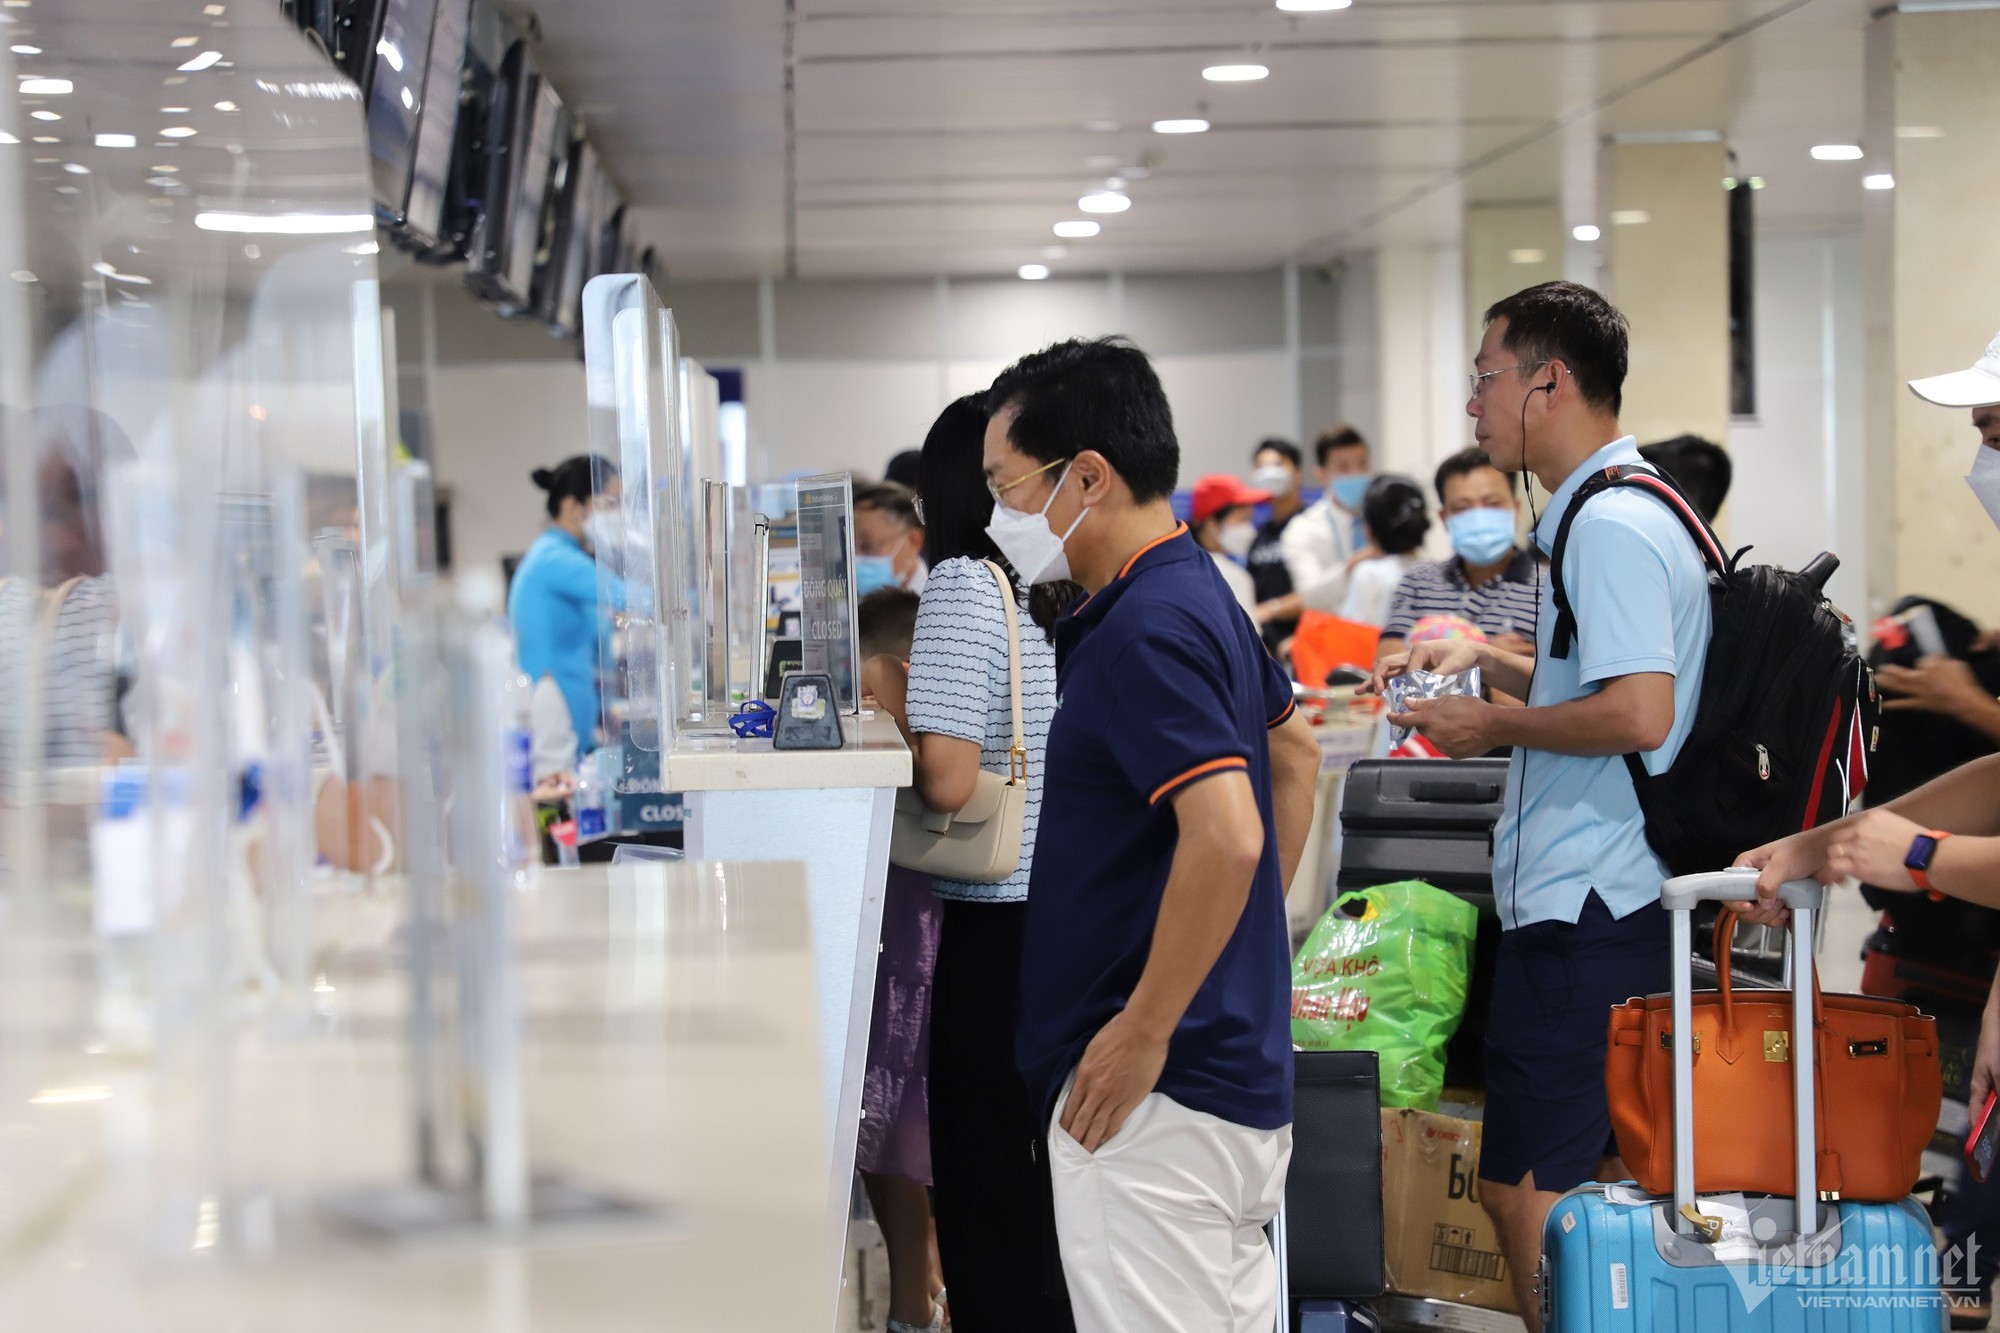 Cảnh báo ngập, chậm chuyến tăng cao dịp hè tại sân bay Tân Sơn Nhất - Ảnh 1.